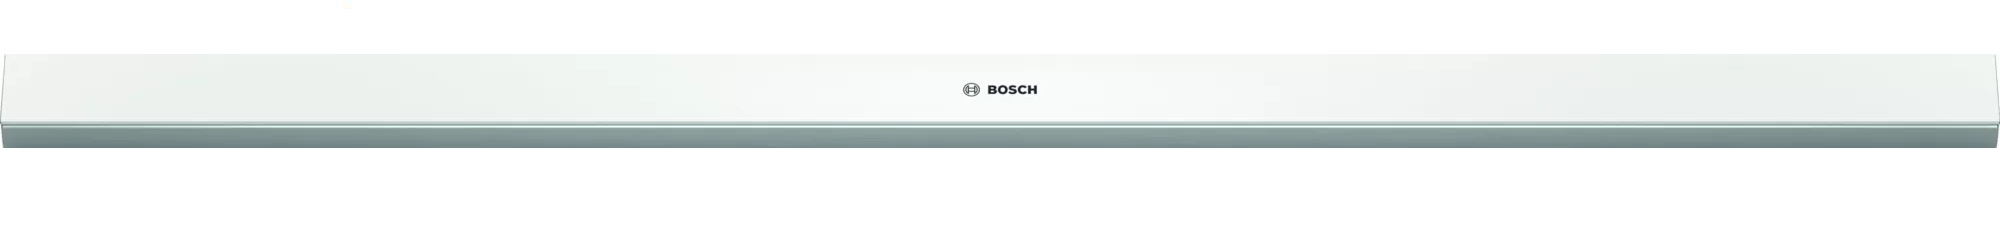 Bosch DSZ4982